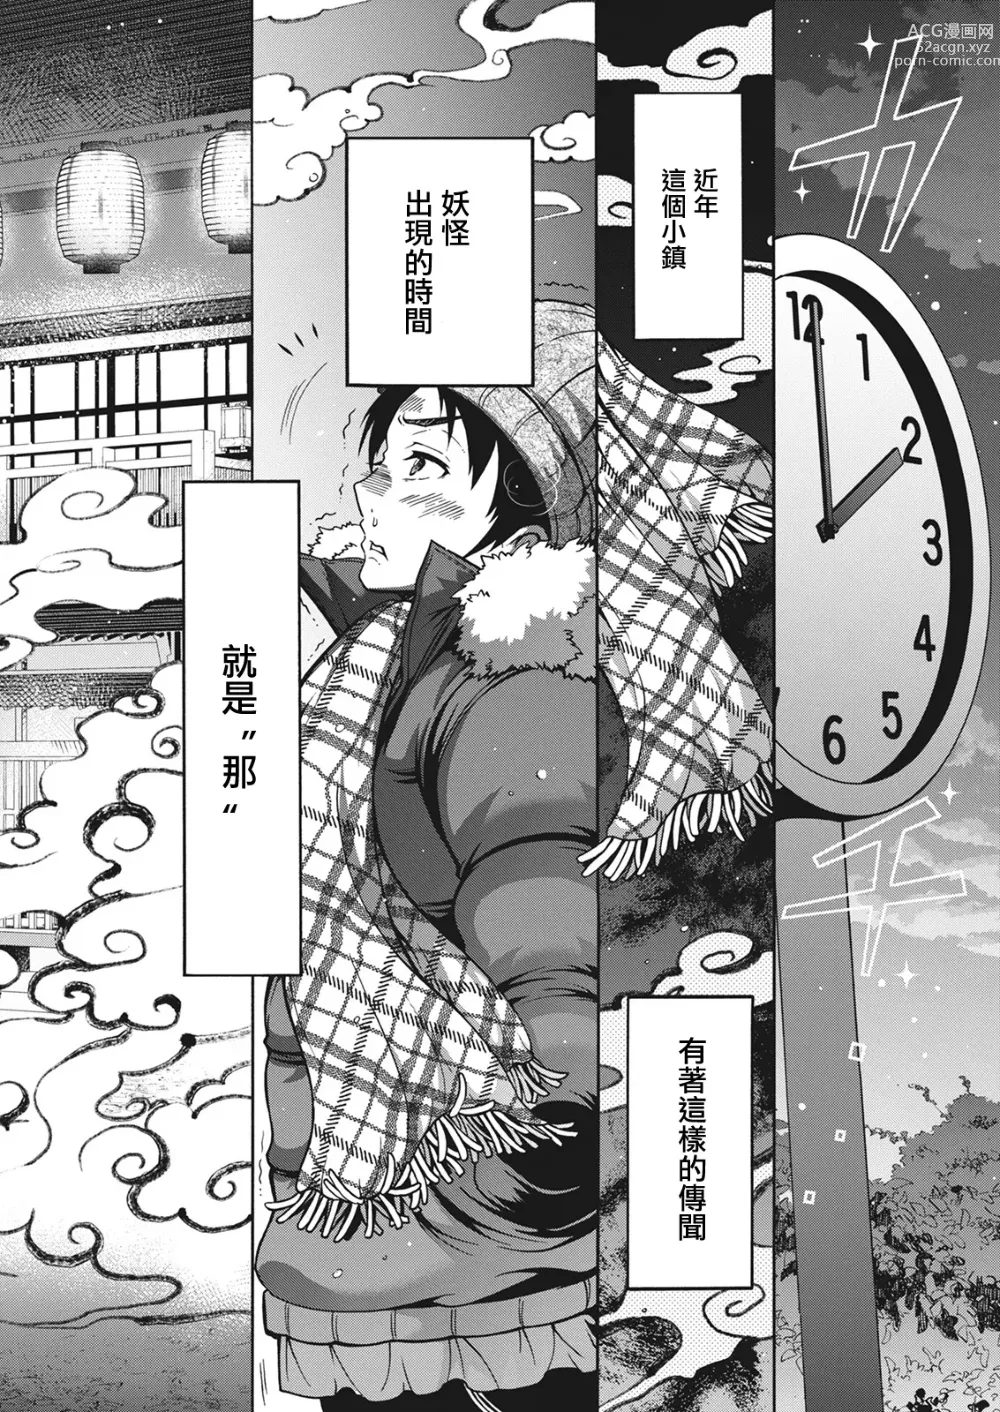 Page 2 of manga 妖怪HHH